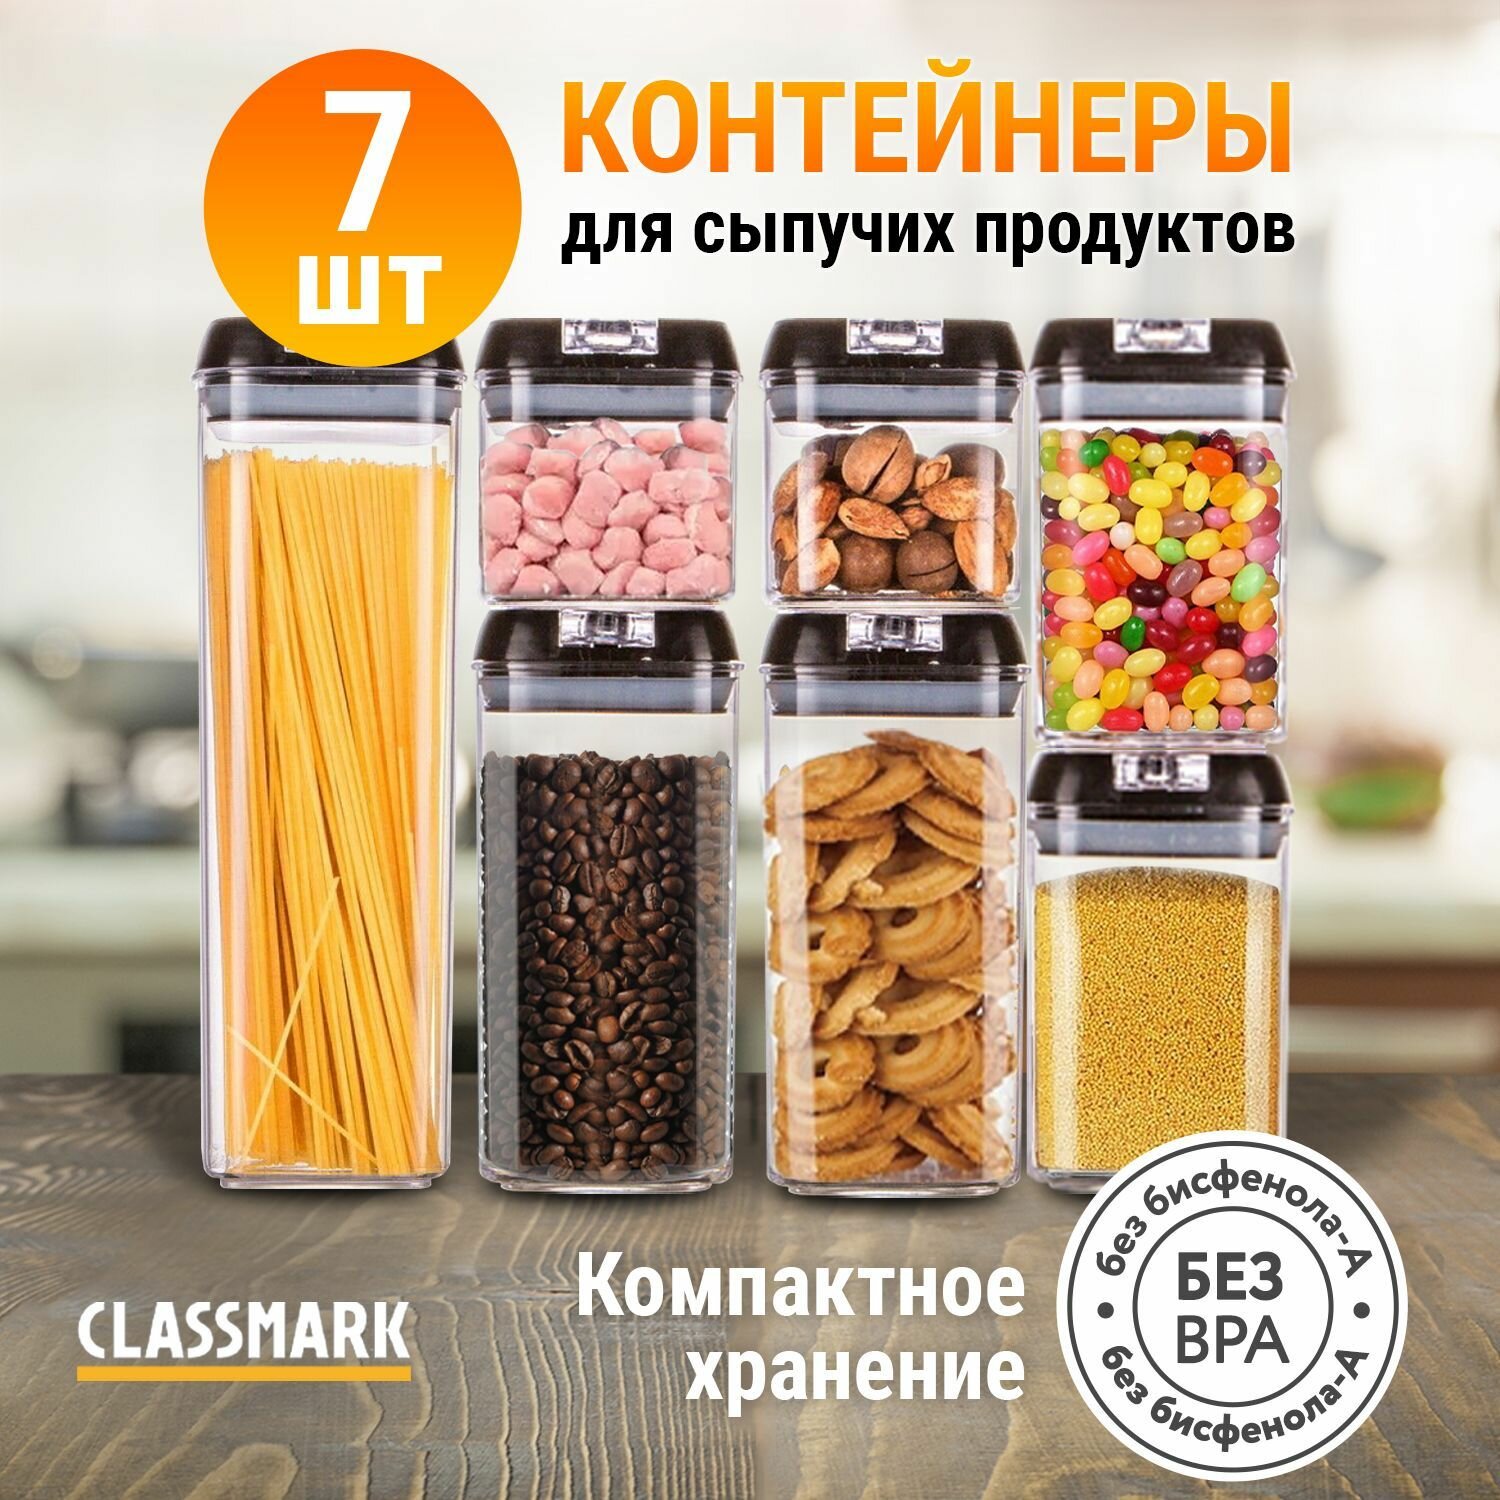 Classmark Classmark Контейнеры для еды, круп и продуктов набор емкостей 7 шт